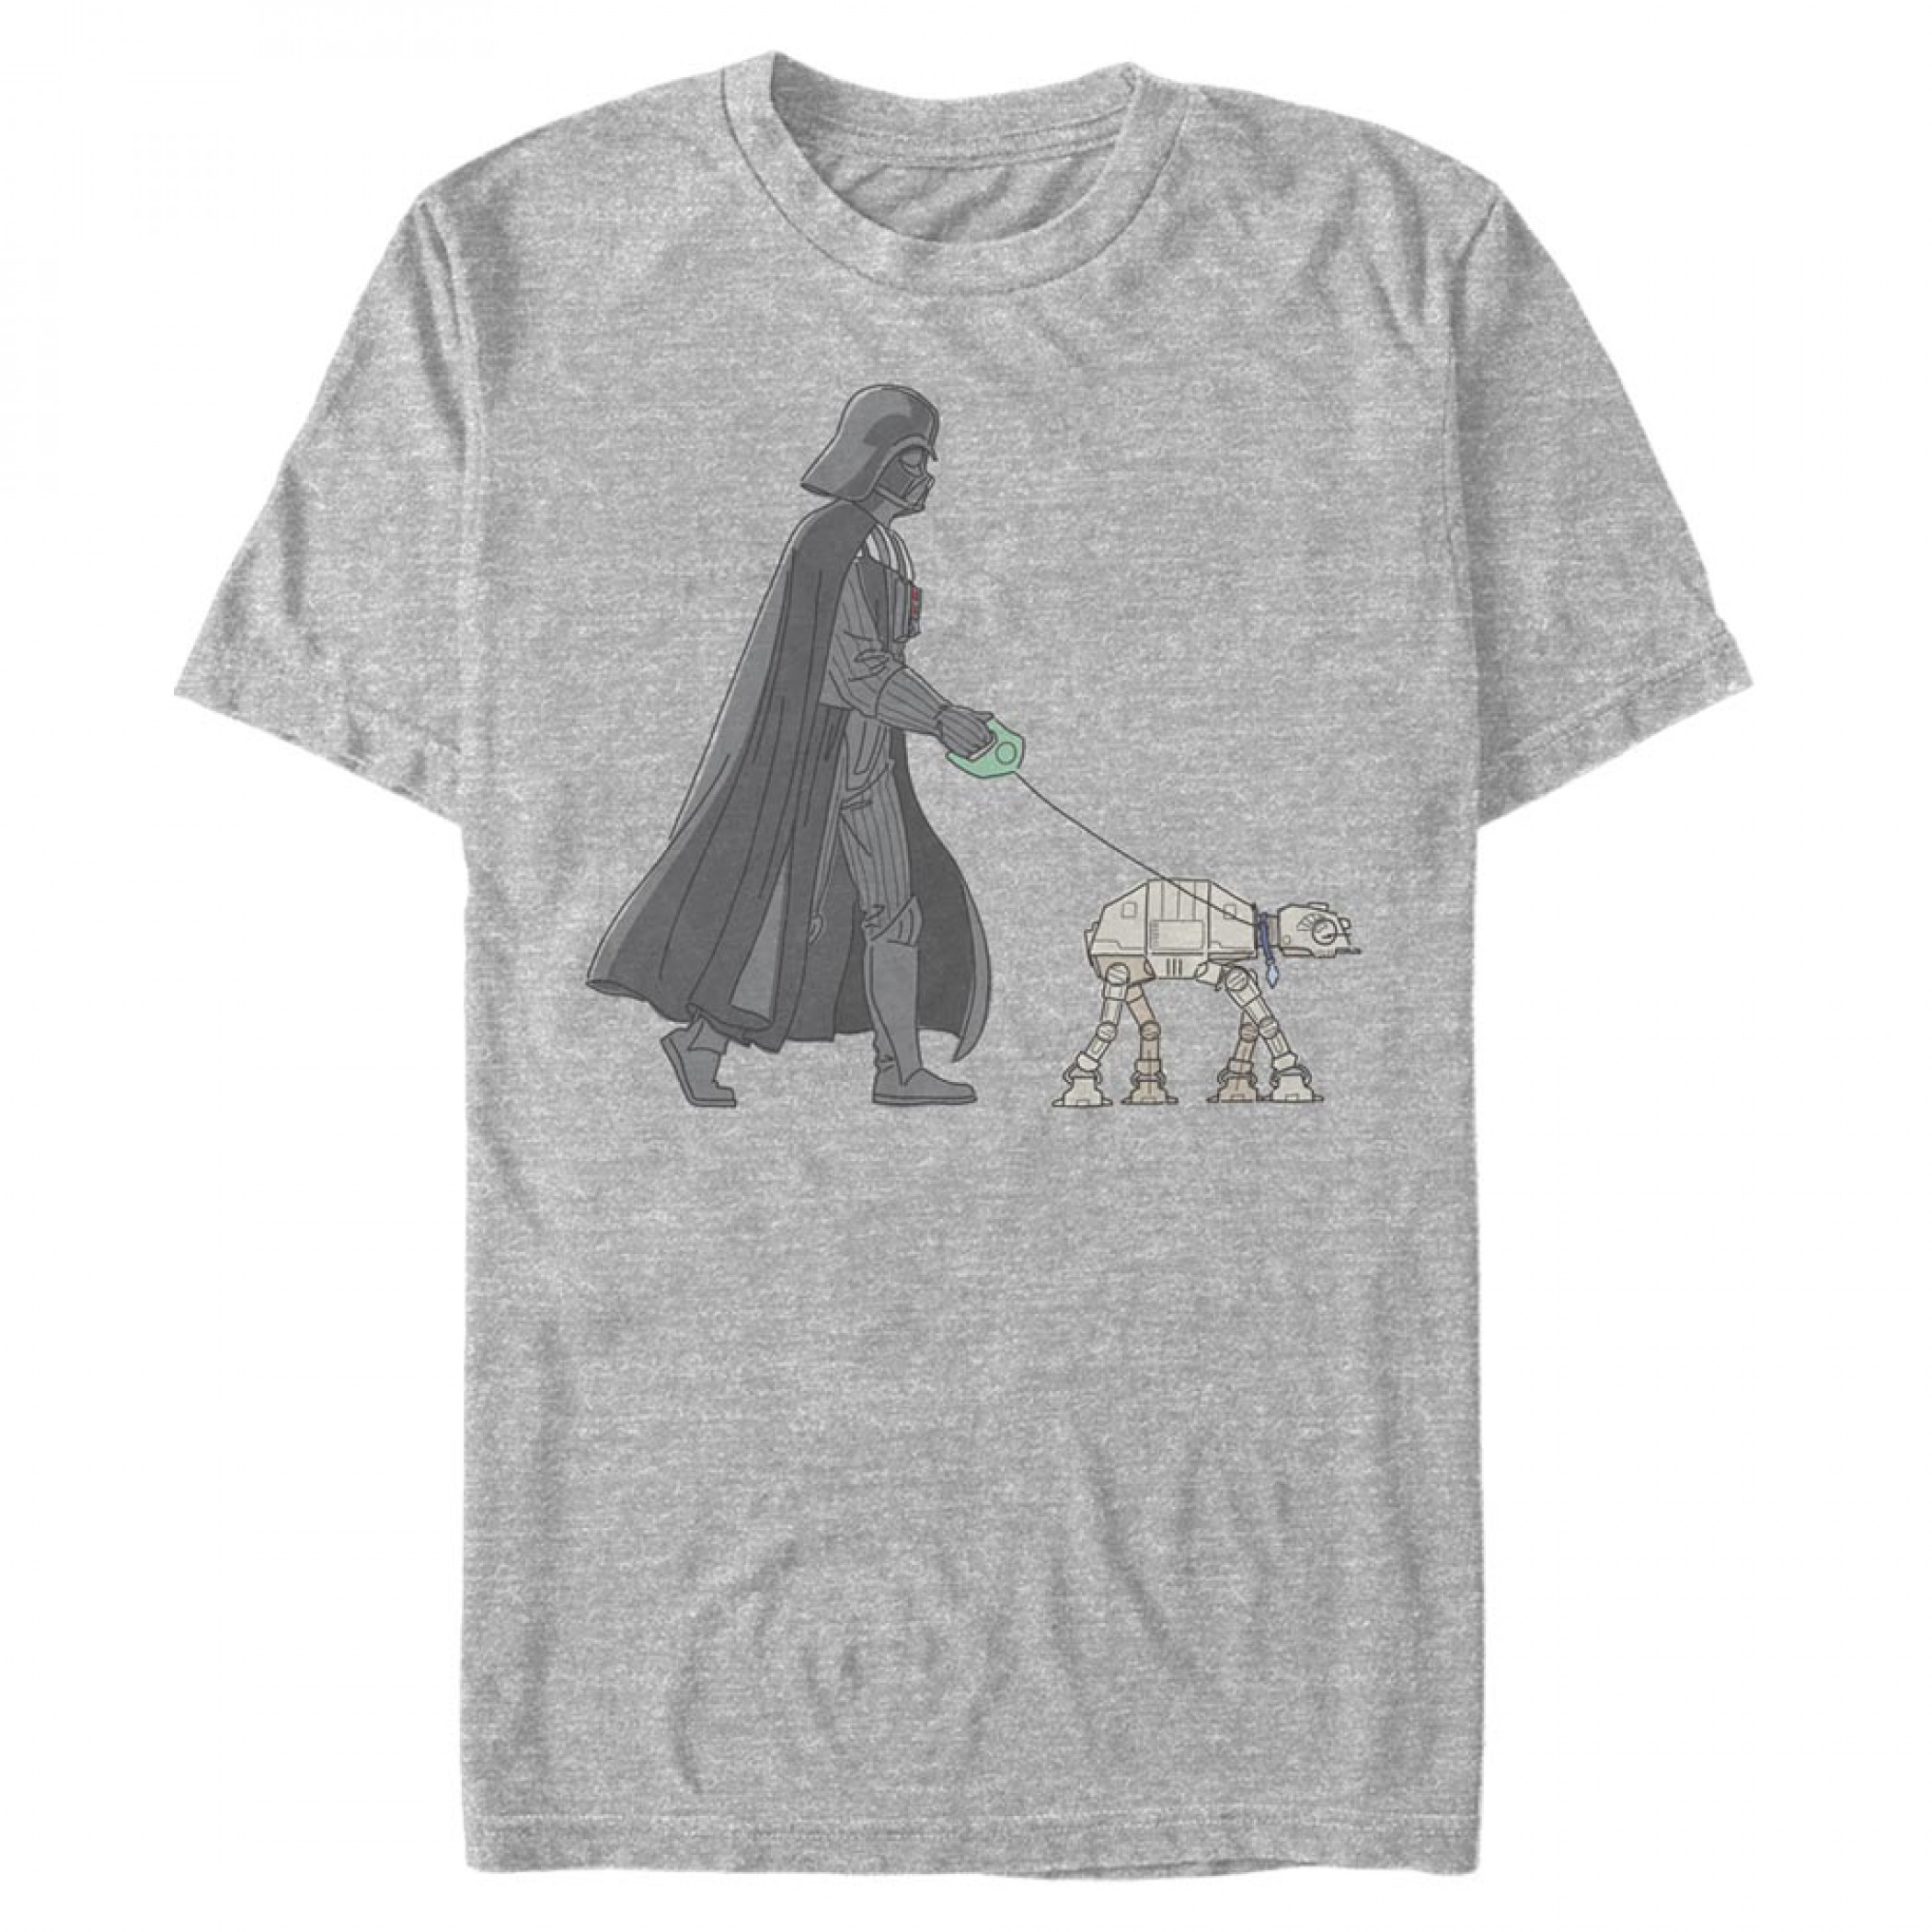 Star Wars Darth Vader Just Walking His AT-AT T-Shirt